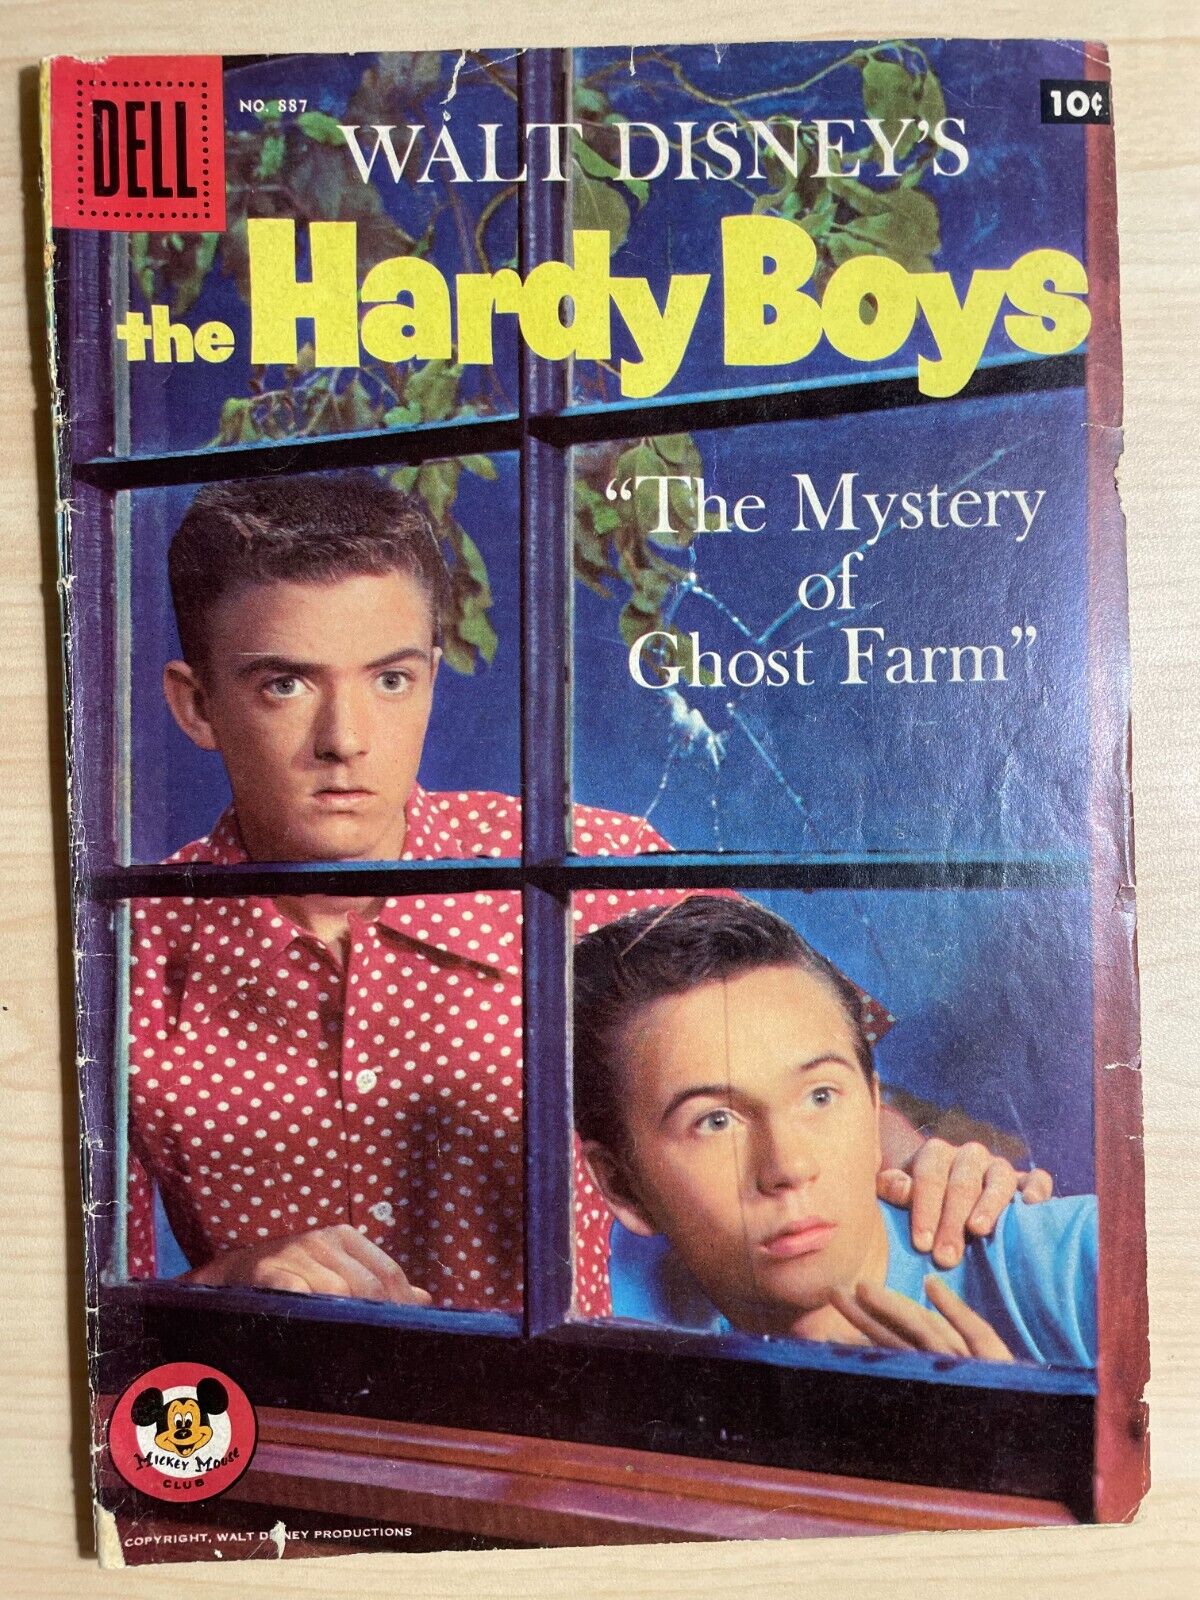 THE HARDY BOYS, Walt Disney\'s, Four Color #887, The Mystery of Ghost Farm, 1957